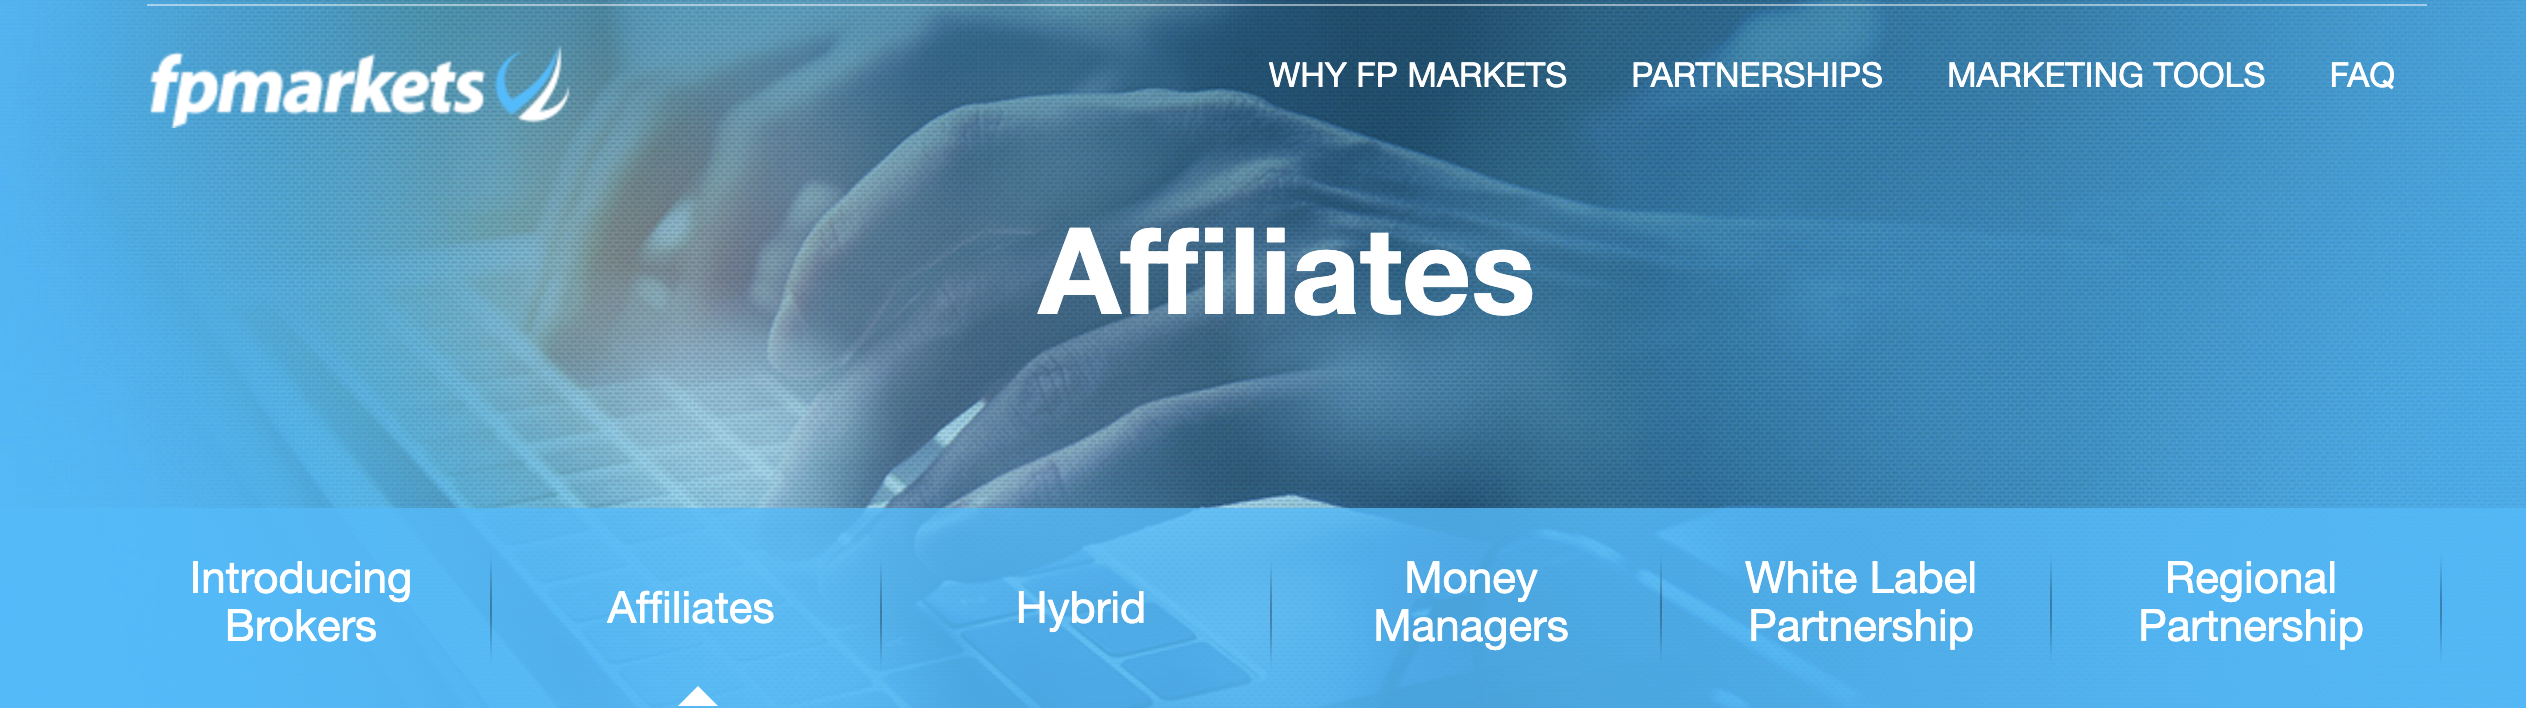 FP Markets Affiliate Program Features